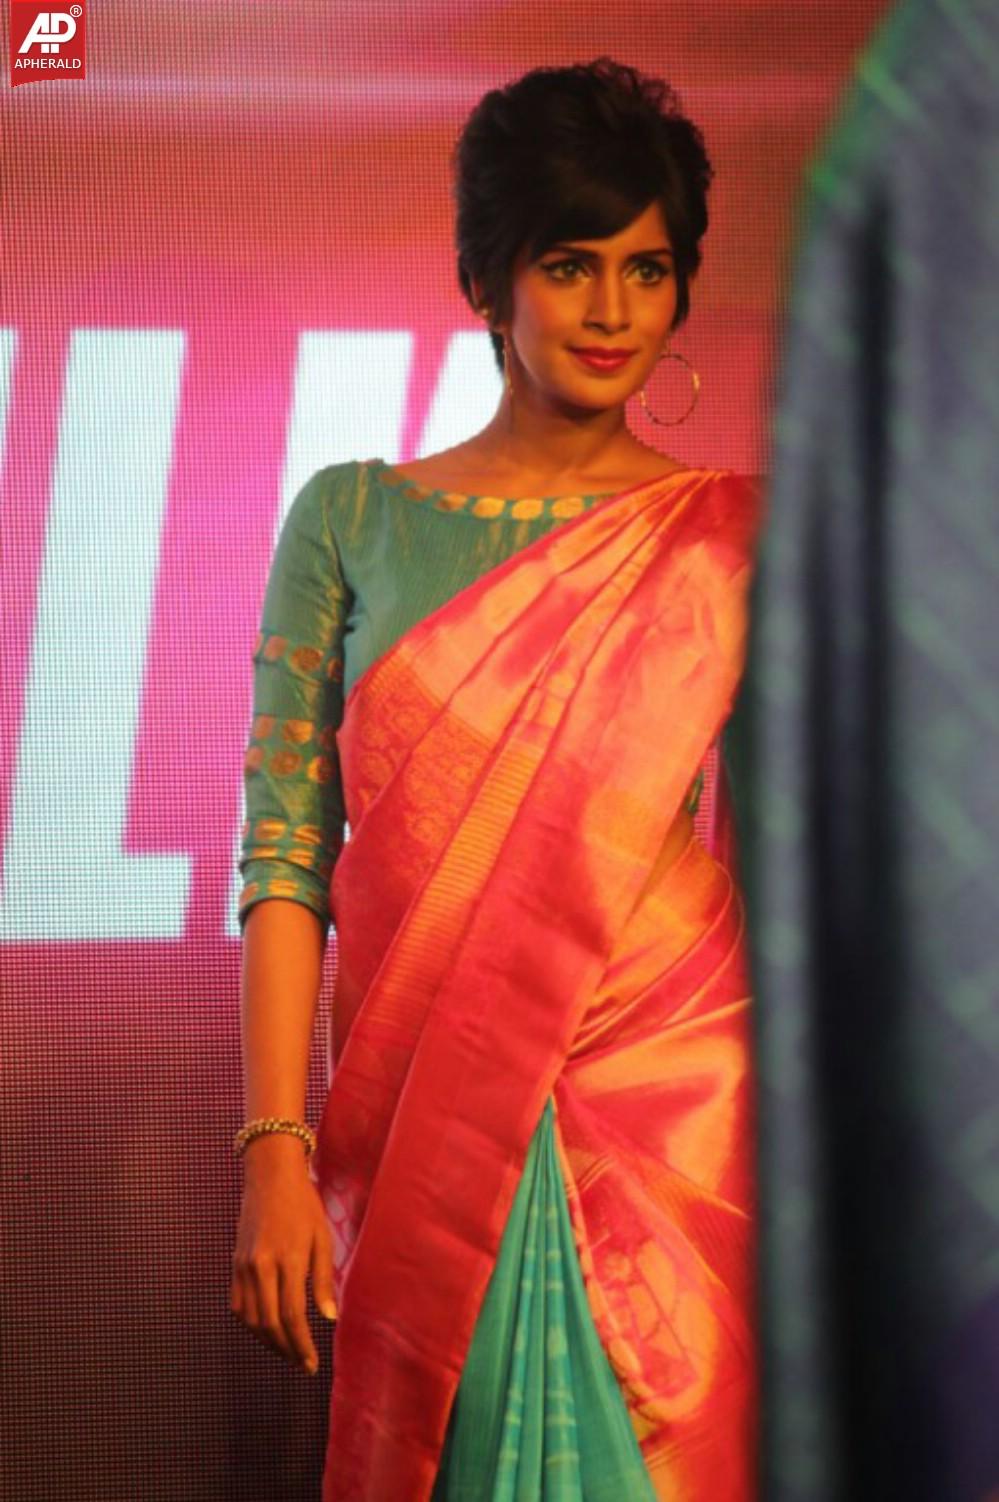 Palam Silks 15 Fashion Show of Happy Near Film Bollywood Stars